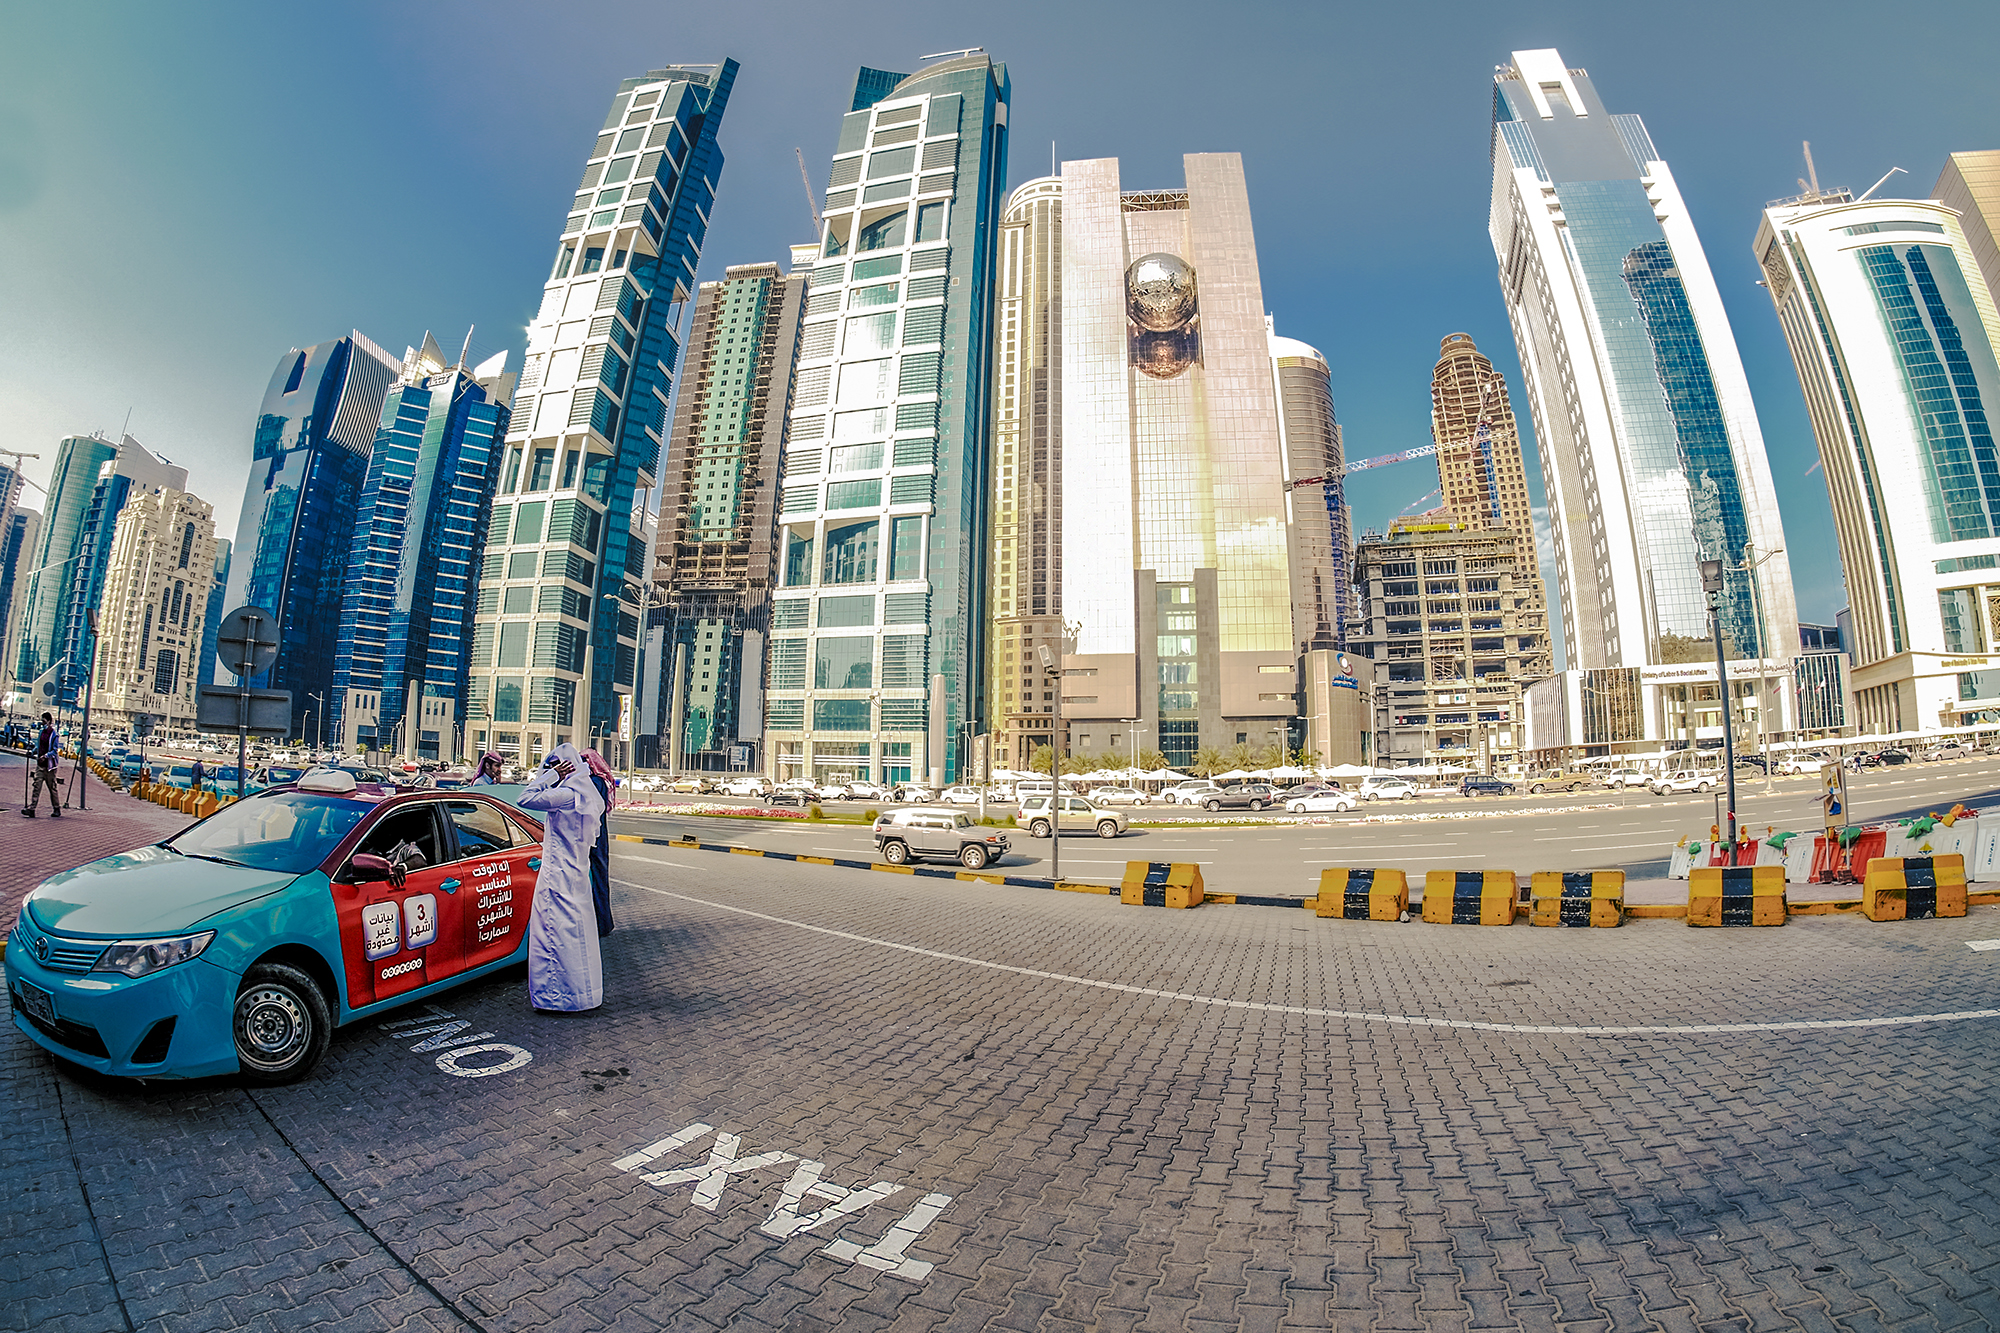 "Walk through the City Center @ Doha"...